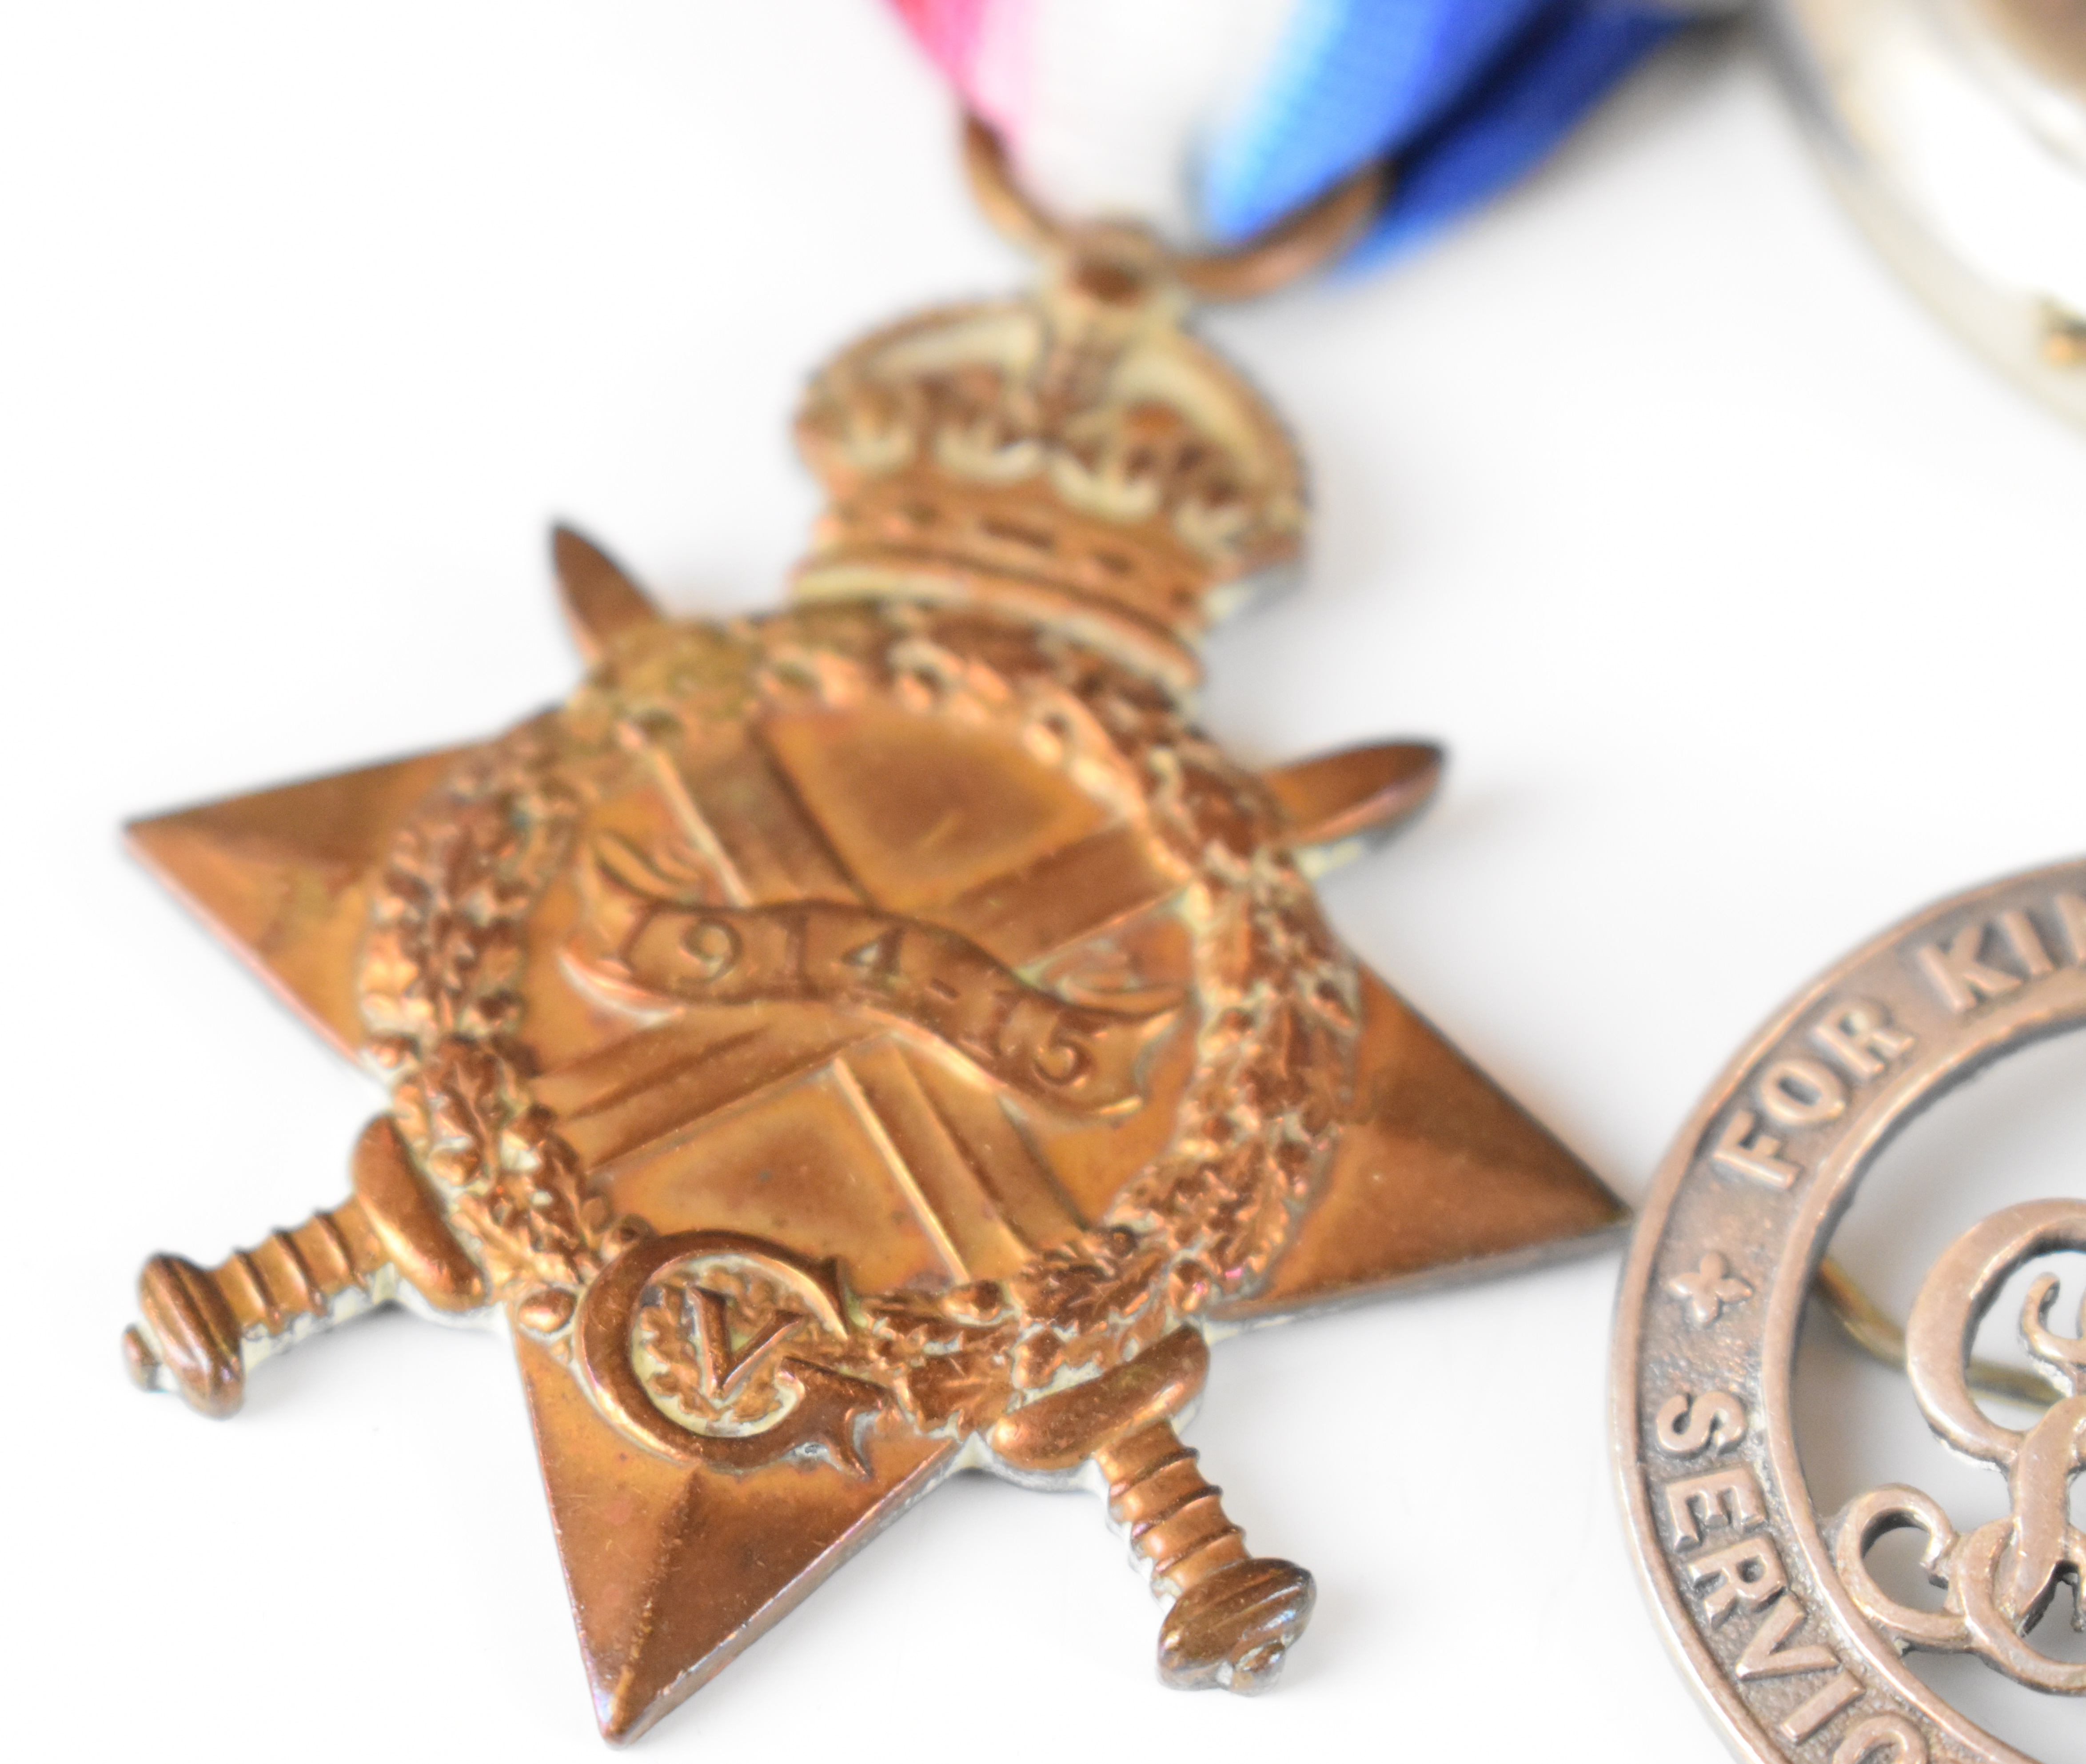 South Africa WW1 1914/1915 Star named to Burger N G C Pretorius, Carolina Kommando, WW1 War Medal - Image 3 of 8